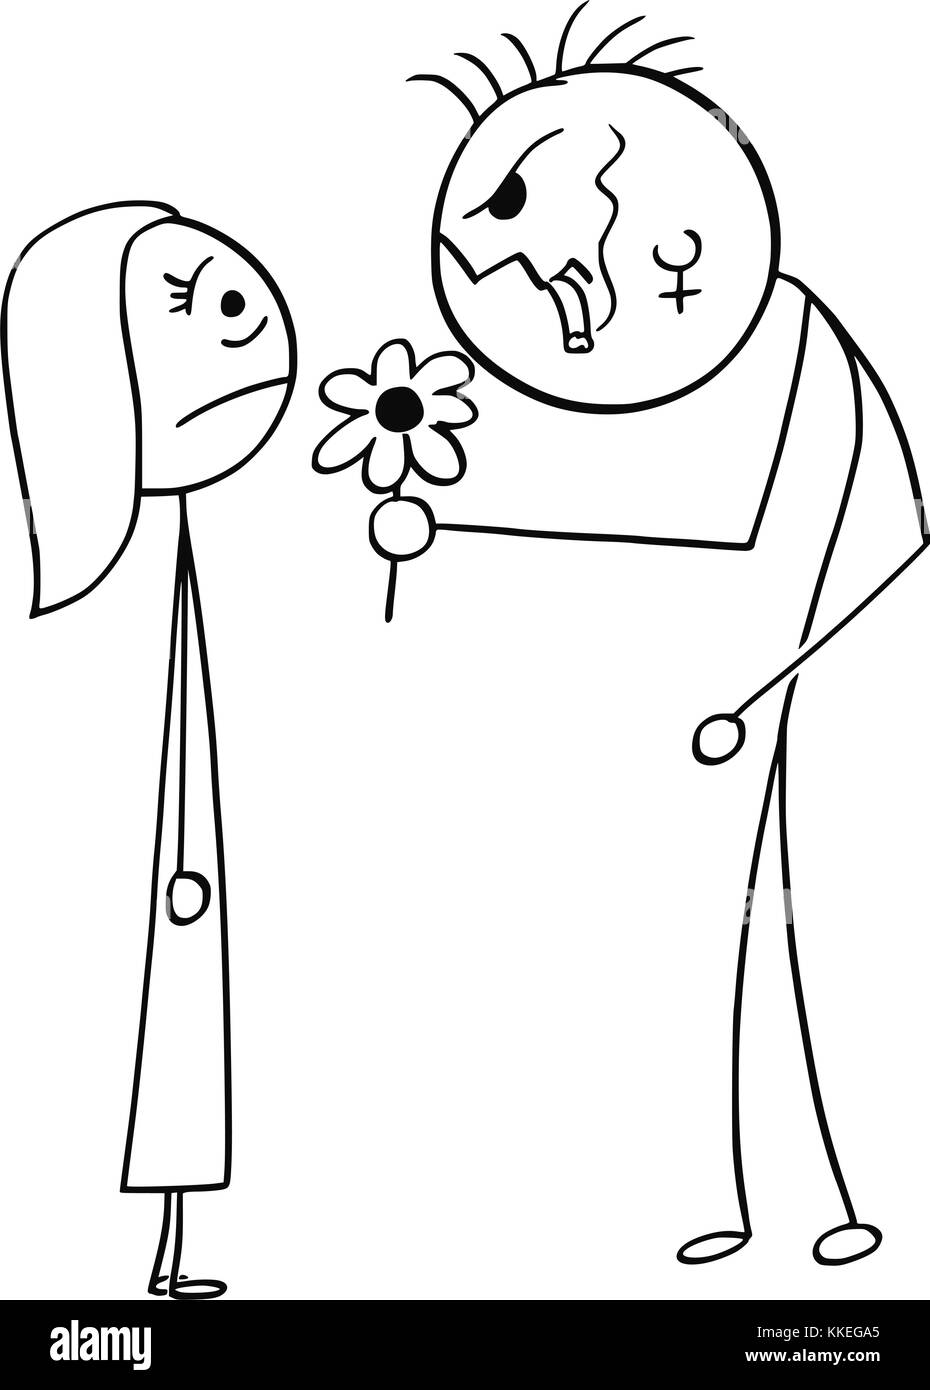 Cartoon stick man dessin illustration de jeune femme surpris sur la date avec laid mohawk hairstyle man punk dangereuses avec fleur et d'un cigare. Illustration de Vecteur